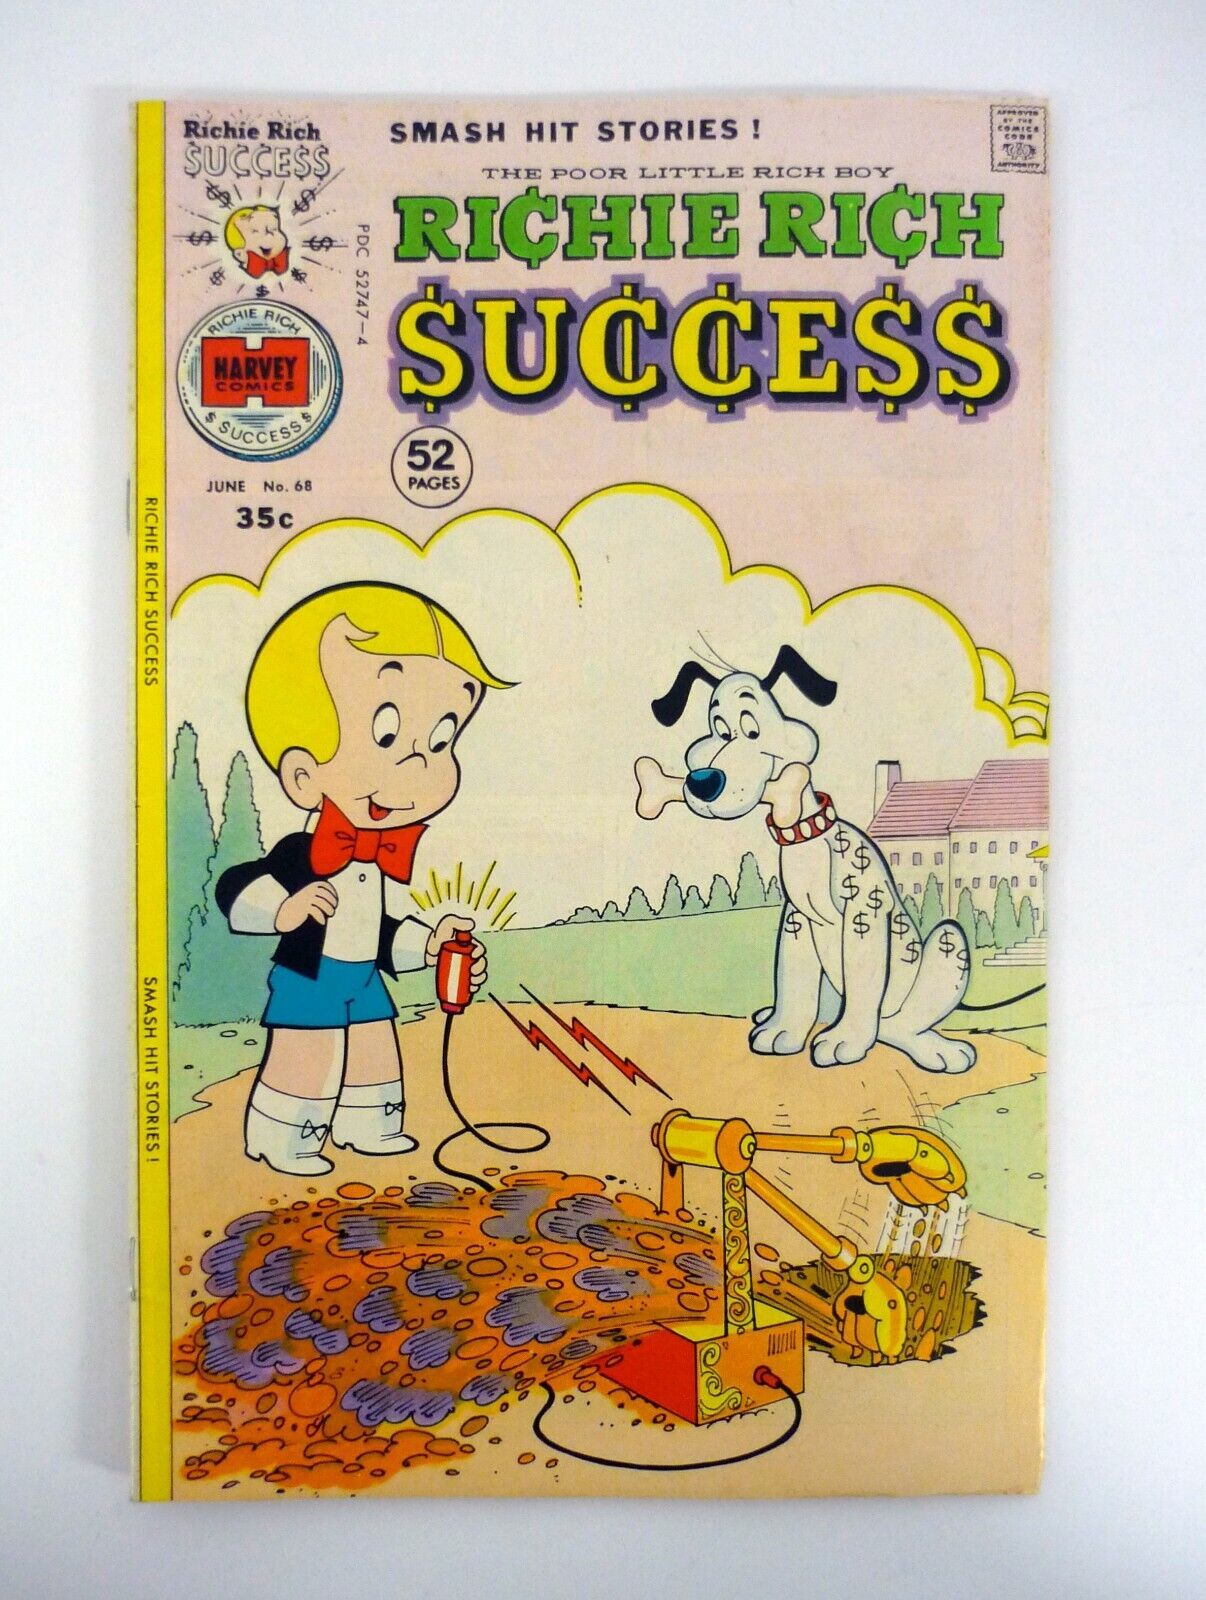 Richie Rich Success Stories #68 Harvey Comics Smash Hit VF/NM 1976 - $14.84